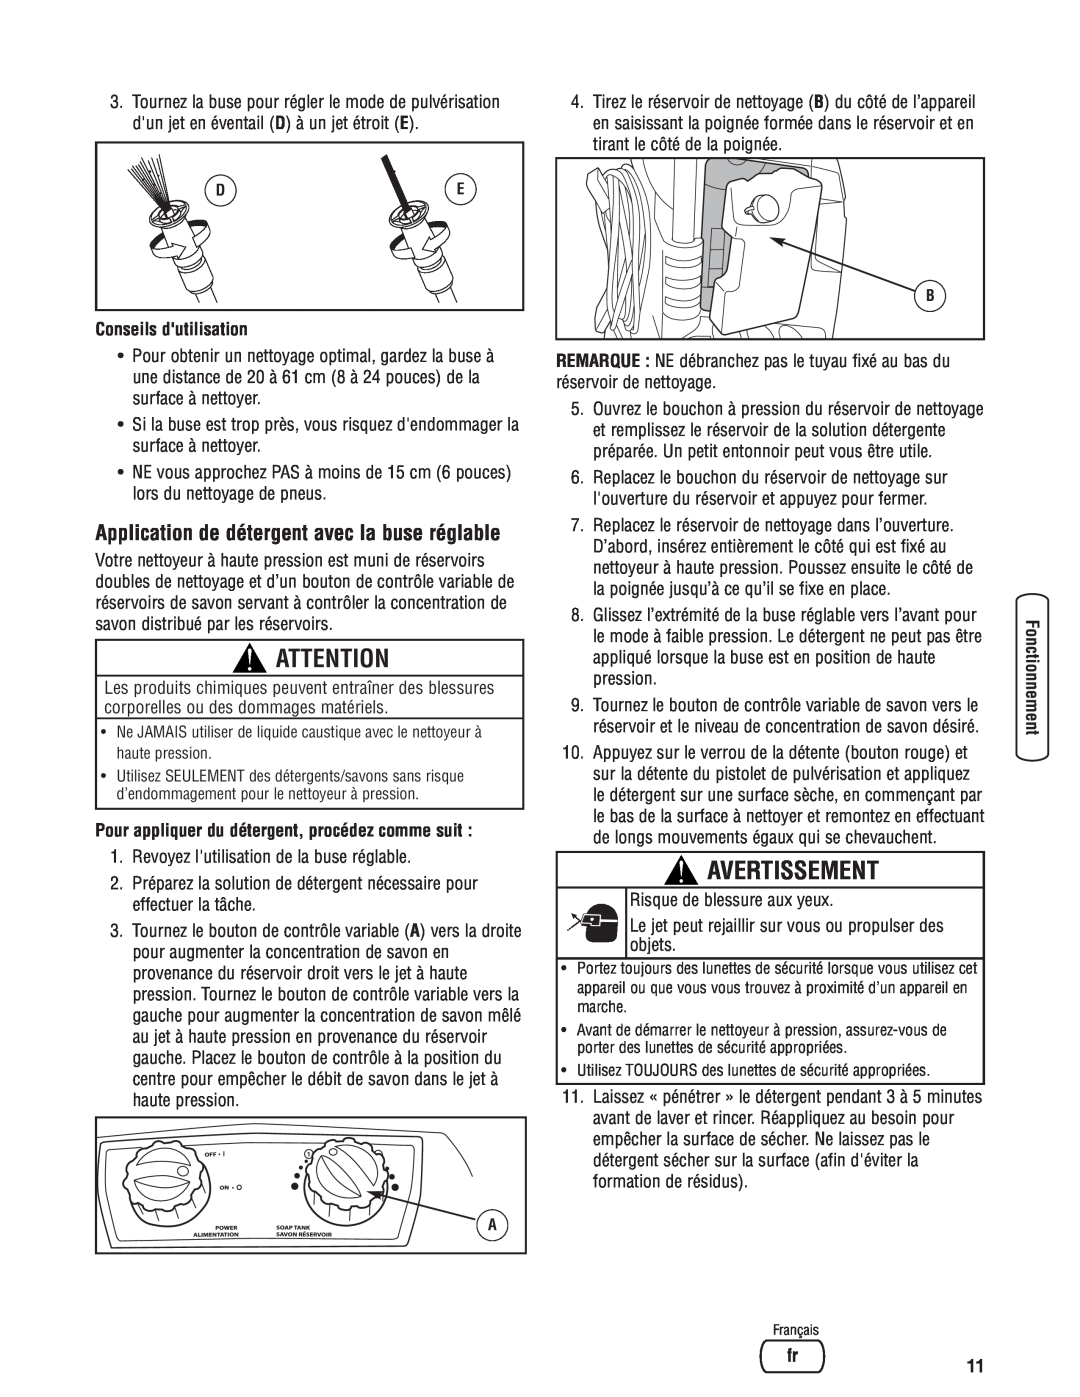 Briggs & Stratton Electric Pressure Washer manual Application de détergent avec la buse réglable, Conseils dutilisation 